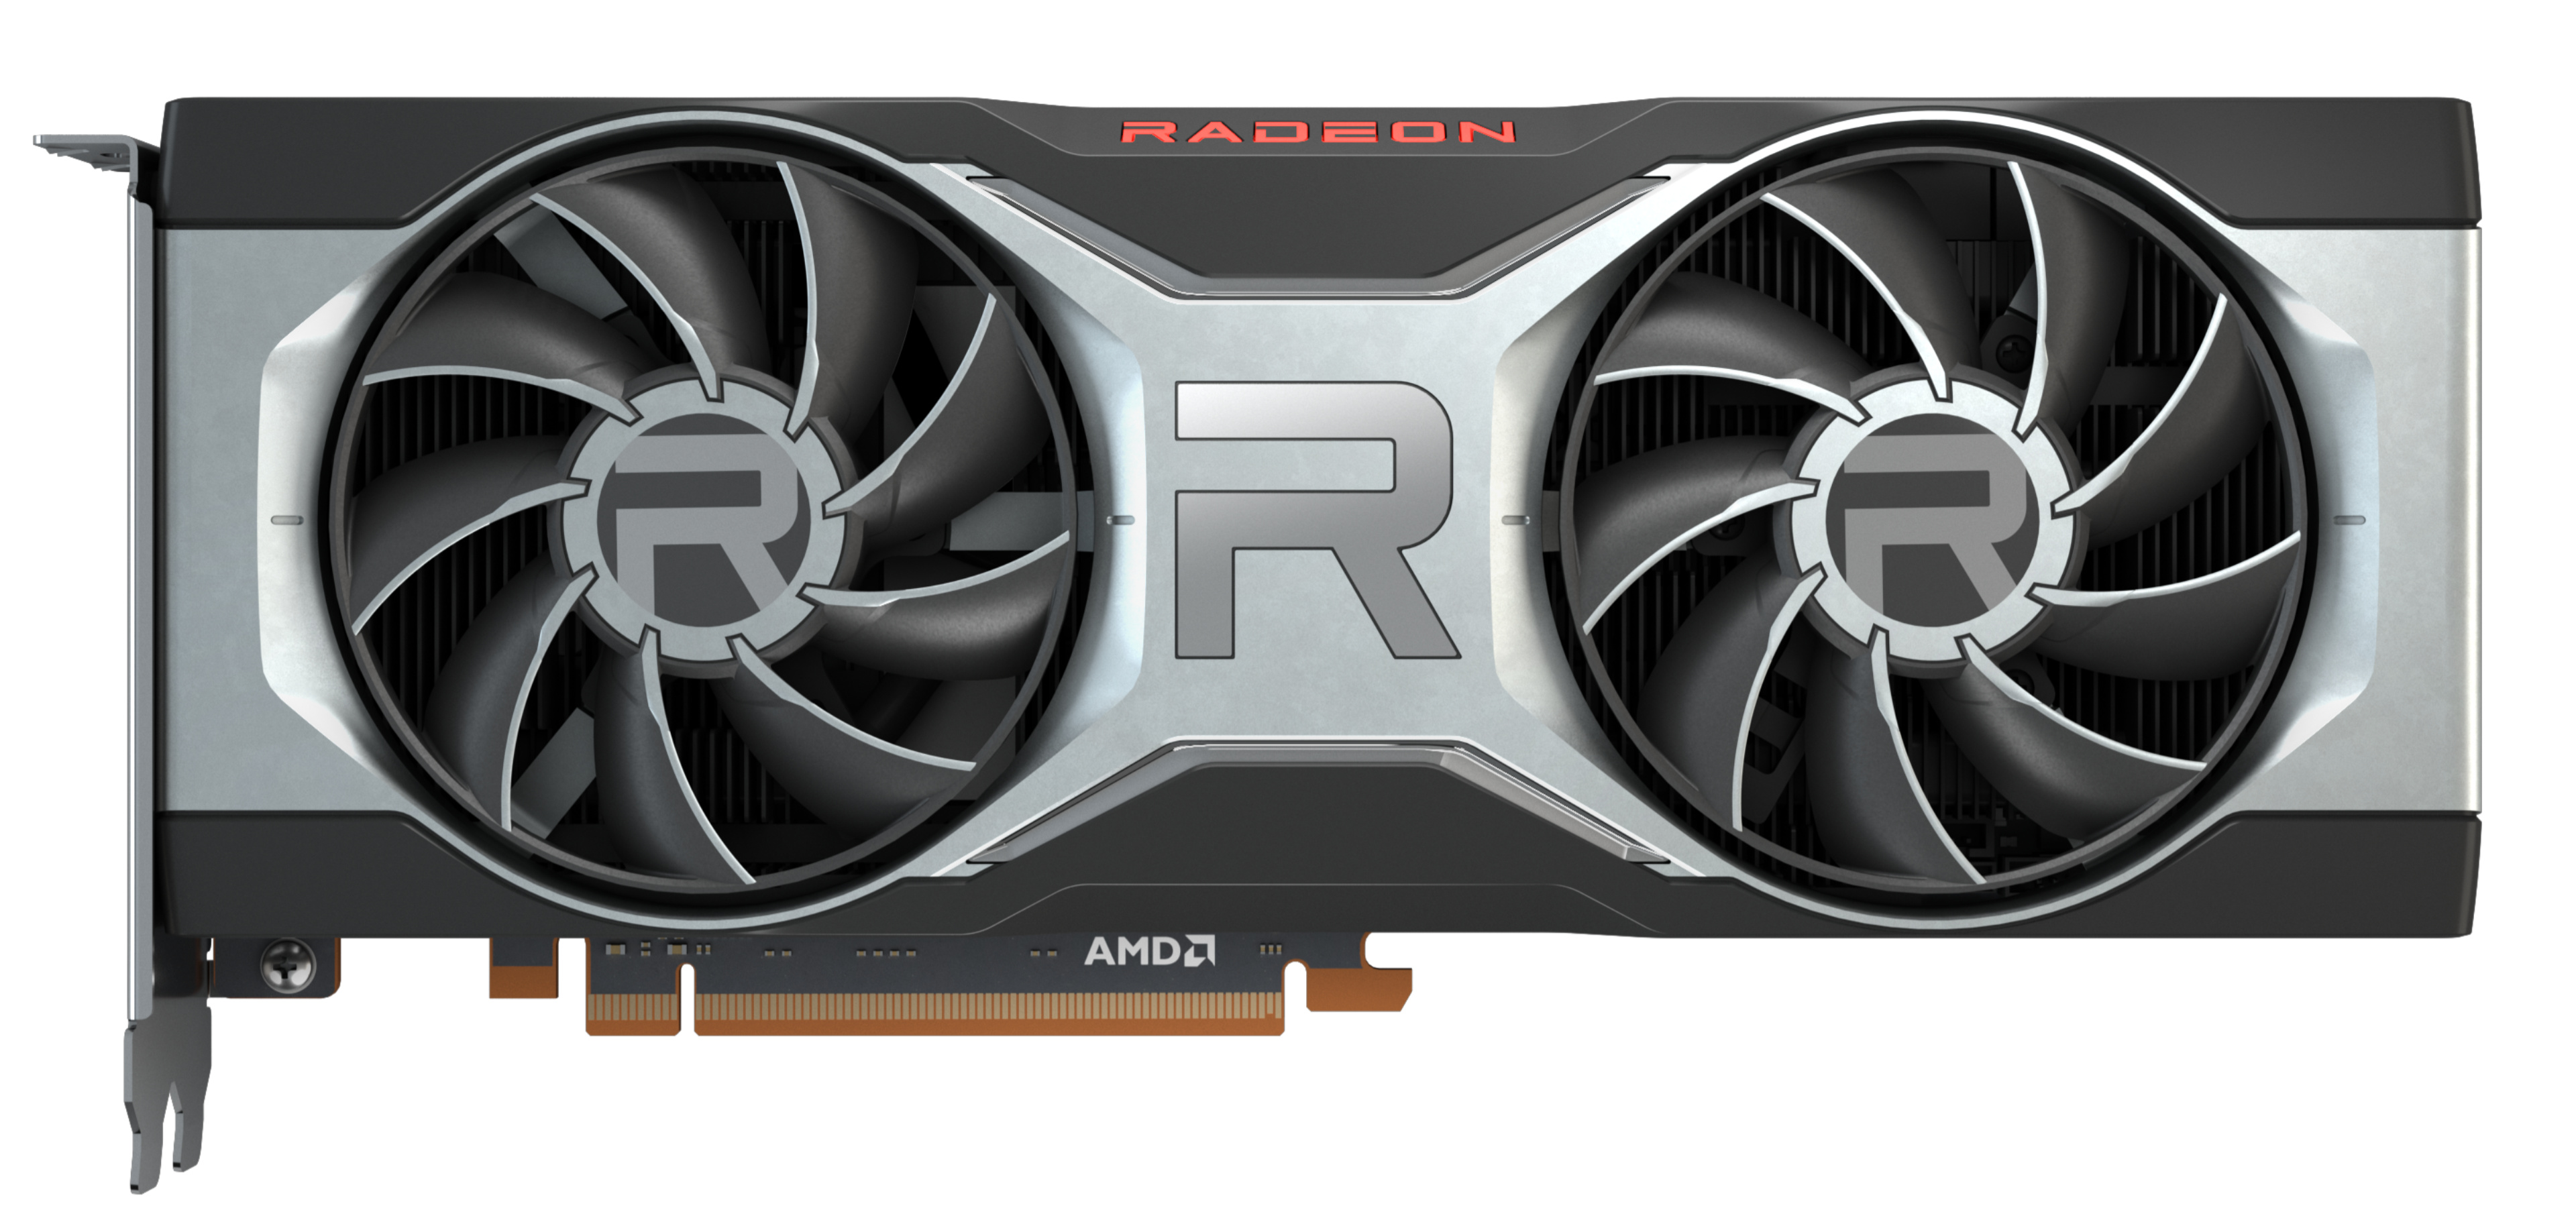 The new mid-range: The AMD Radeon RX 6700 XT Desktop GPU is 